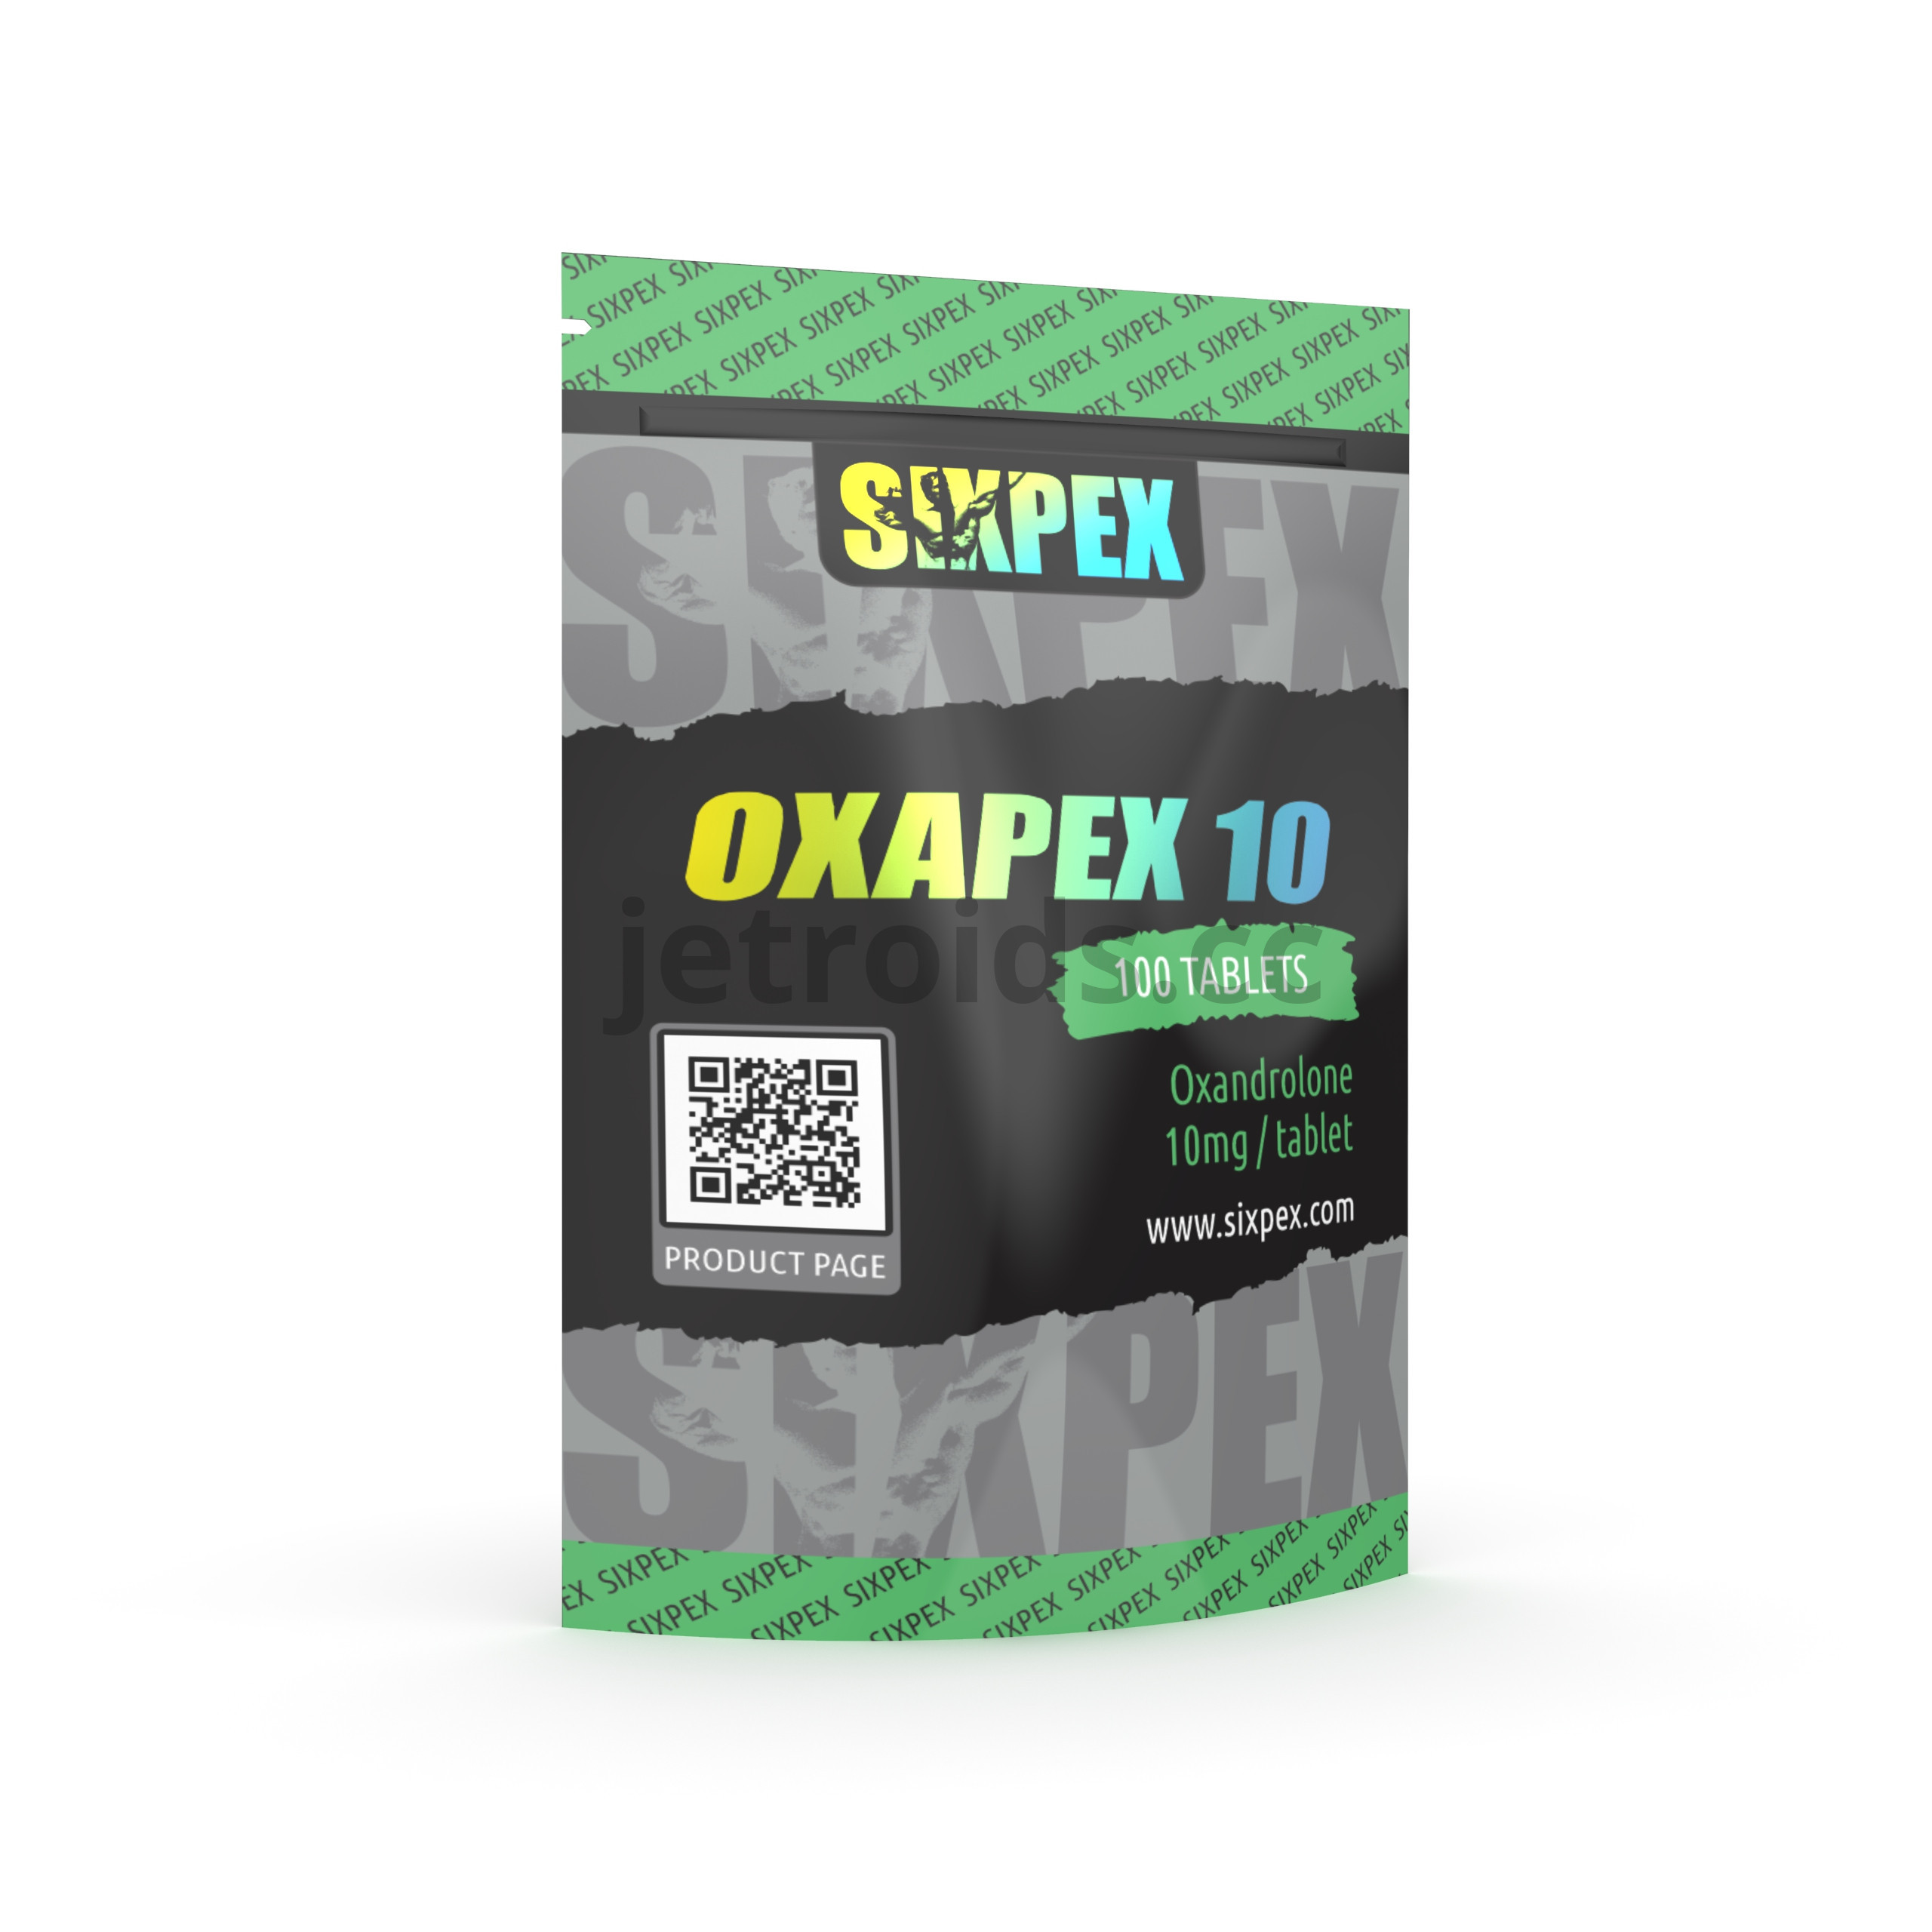 Sixpex Oxapex 10 Product Info